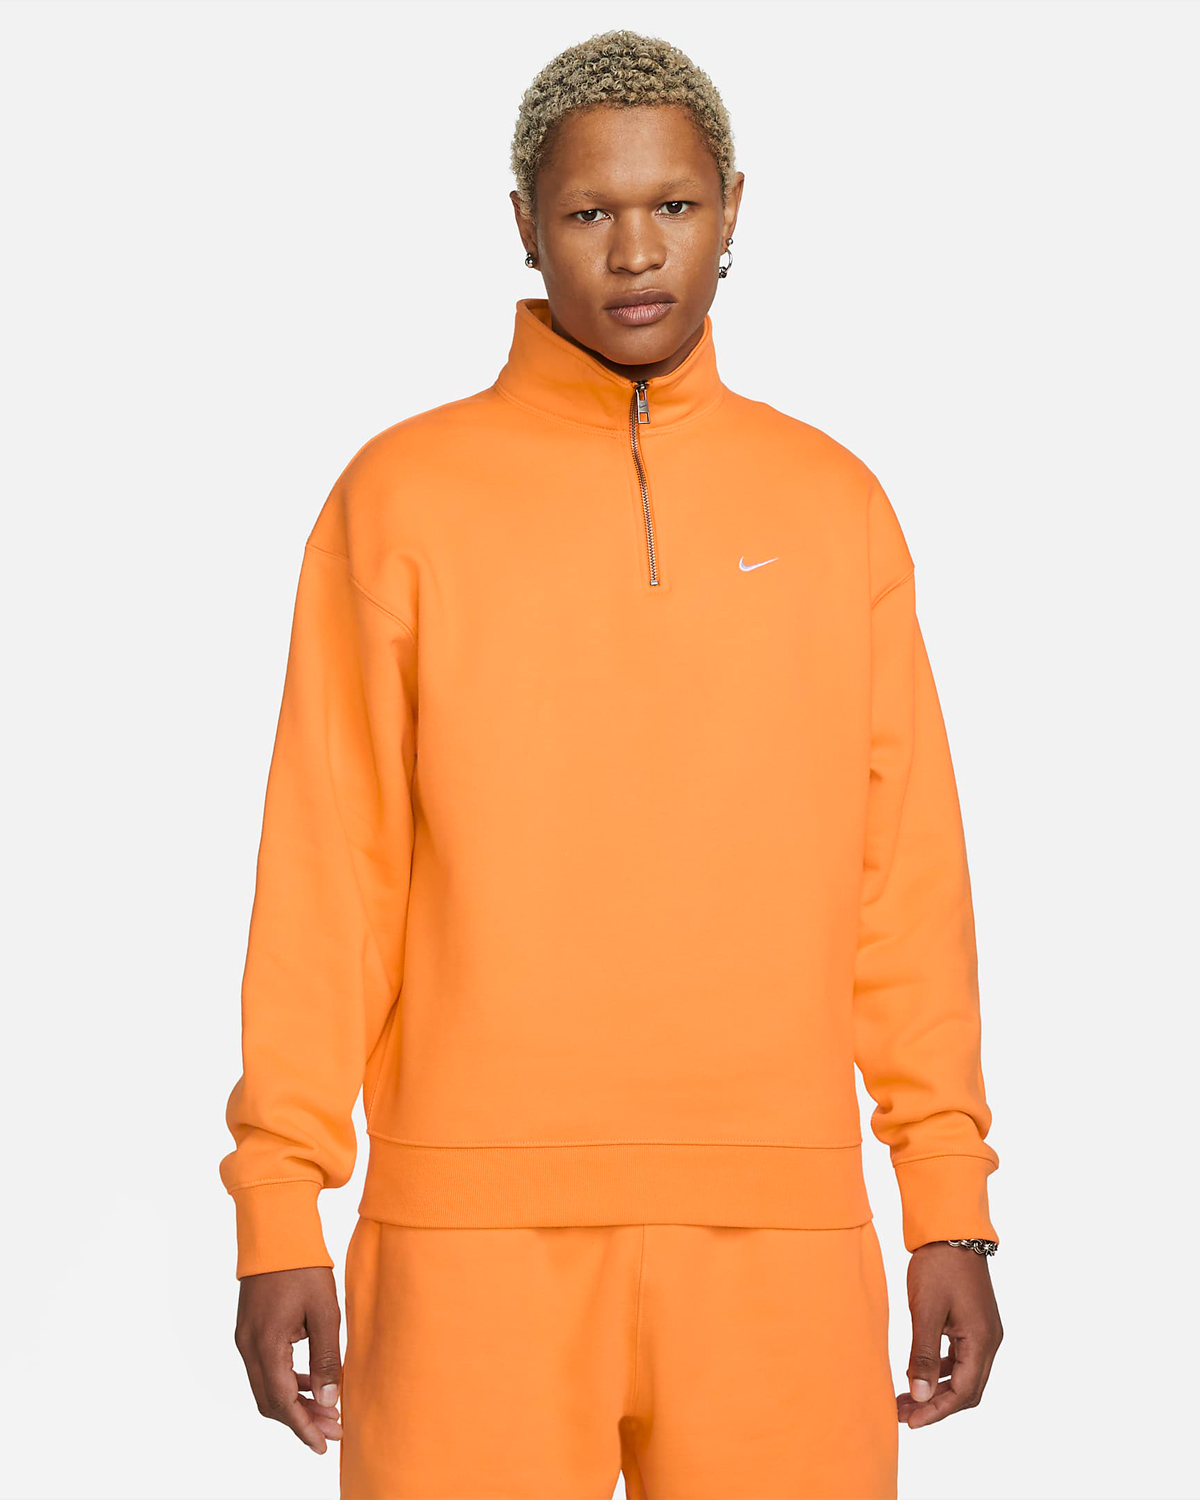 Nike-Solo-Swoosh-Zip-Top-Vivid-Orange